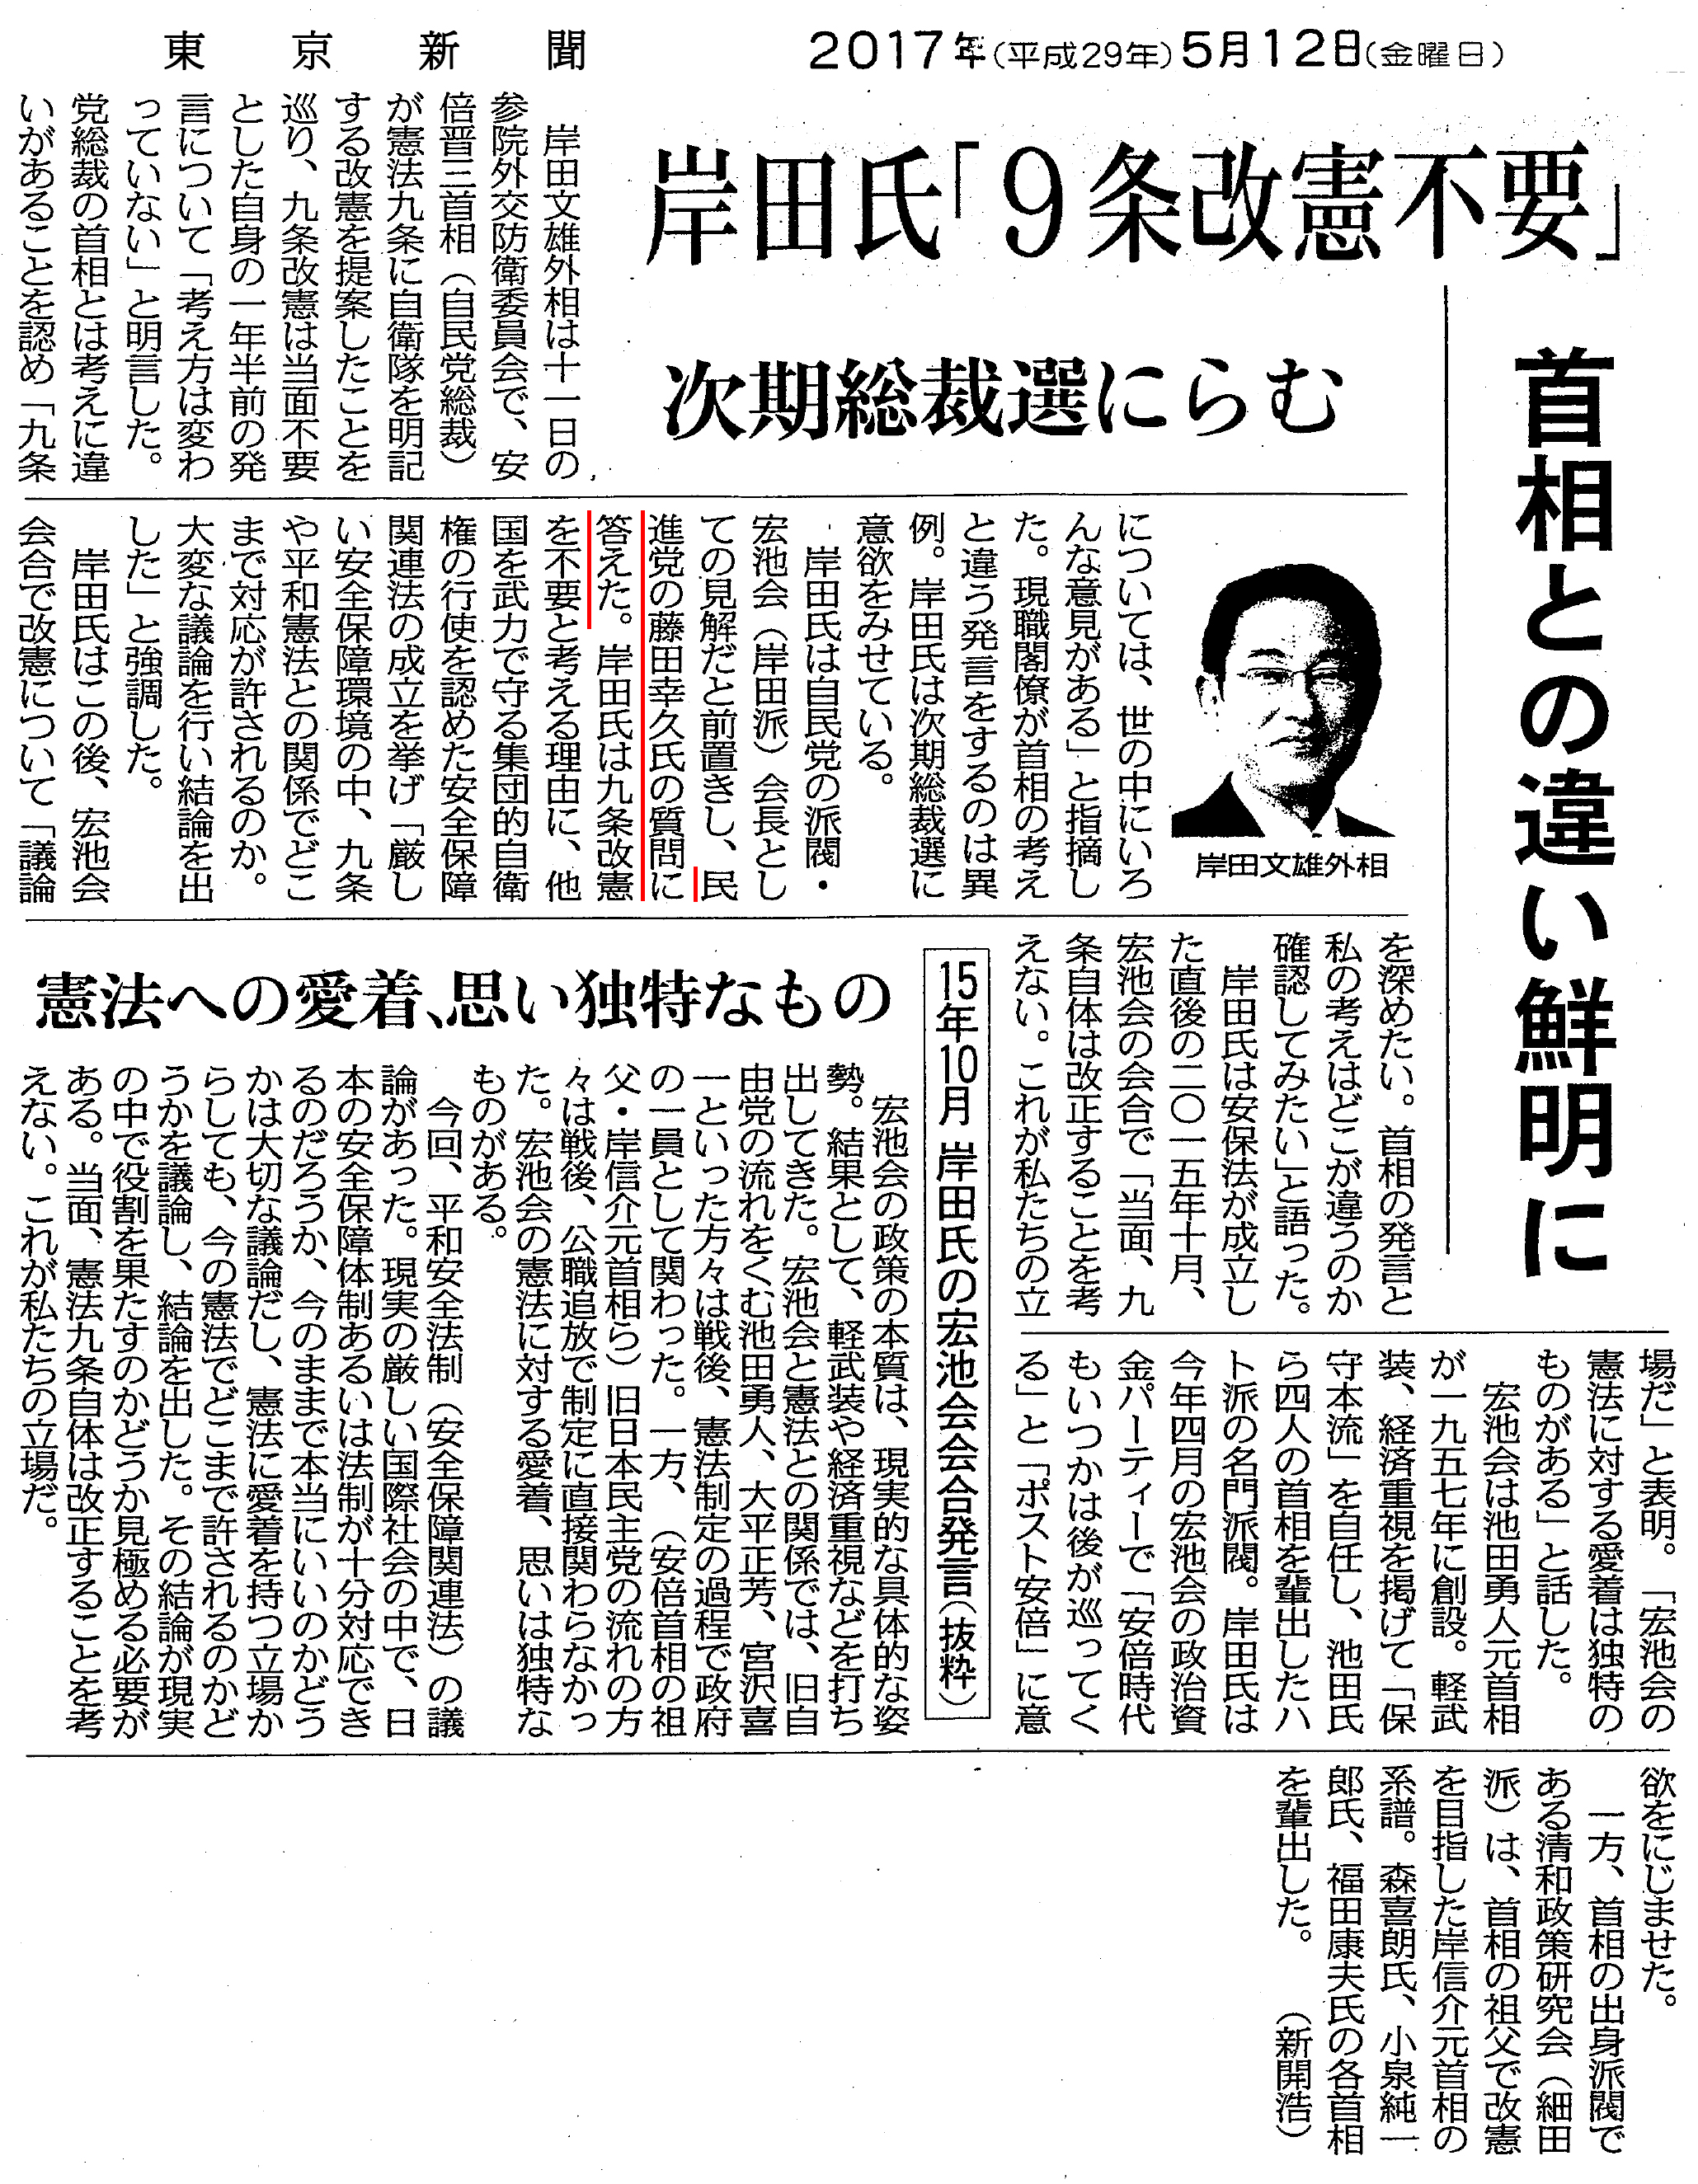 【東京新聞】岸田氏｢9条改憲不要｣次期総裁選にらむ　首相との違い鮮明に